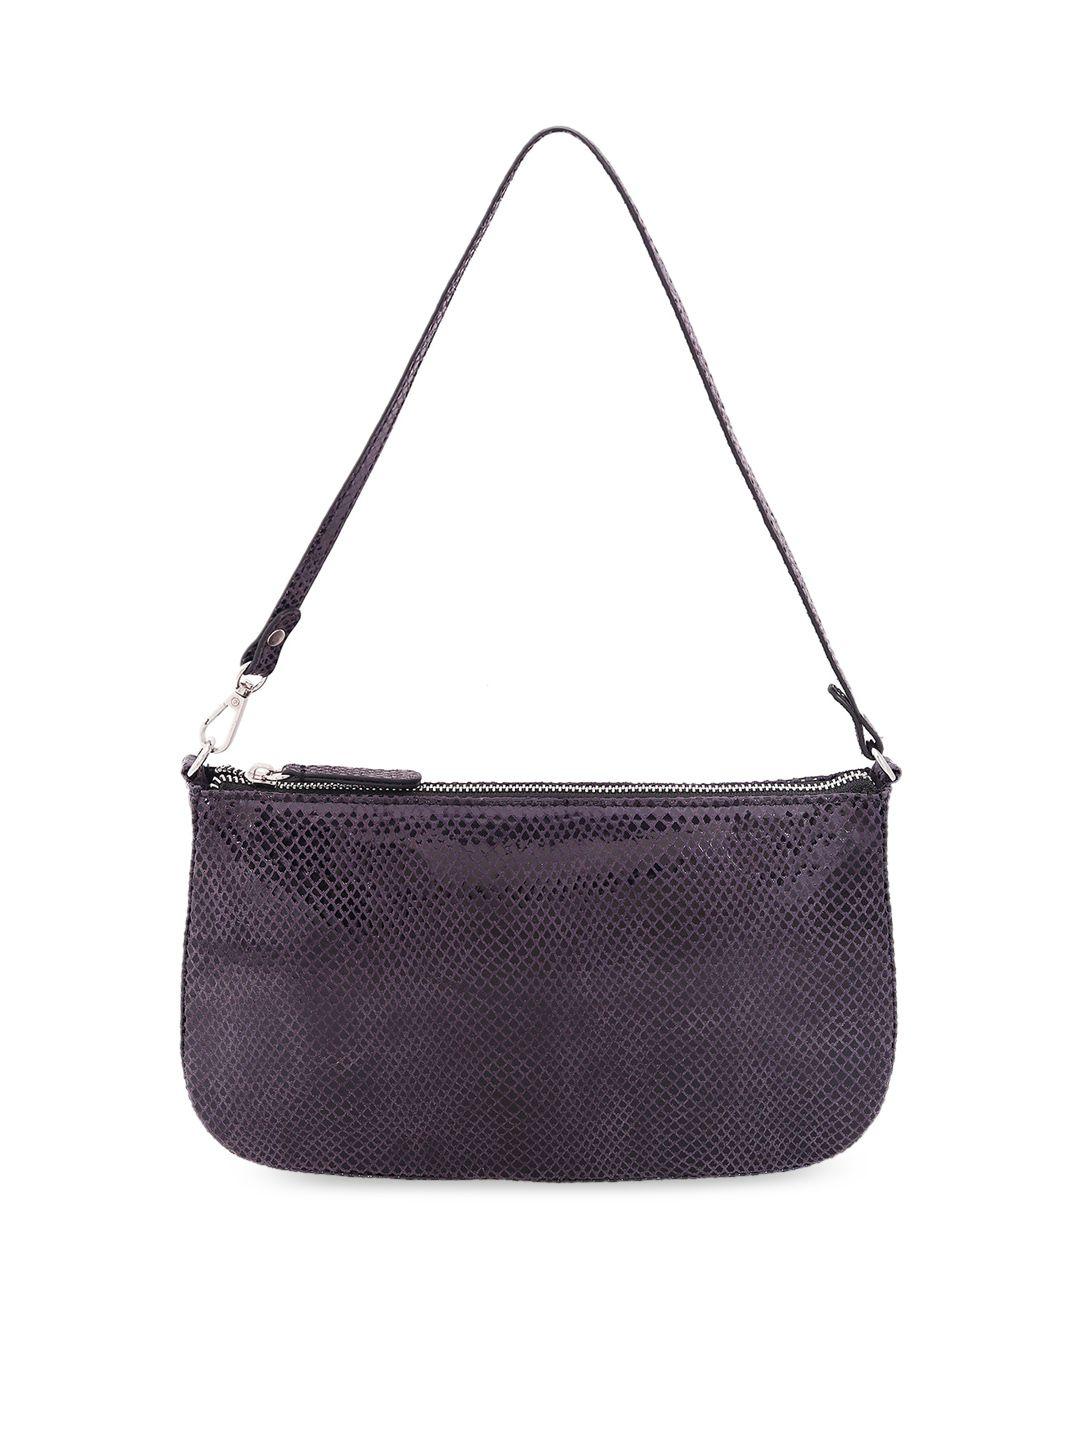 belwaba purple & black snakeskin textured handheld bag